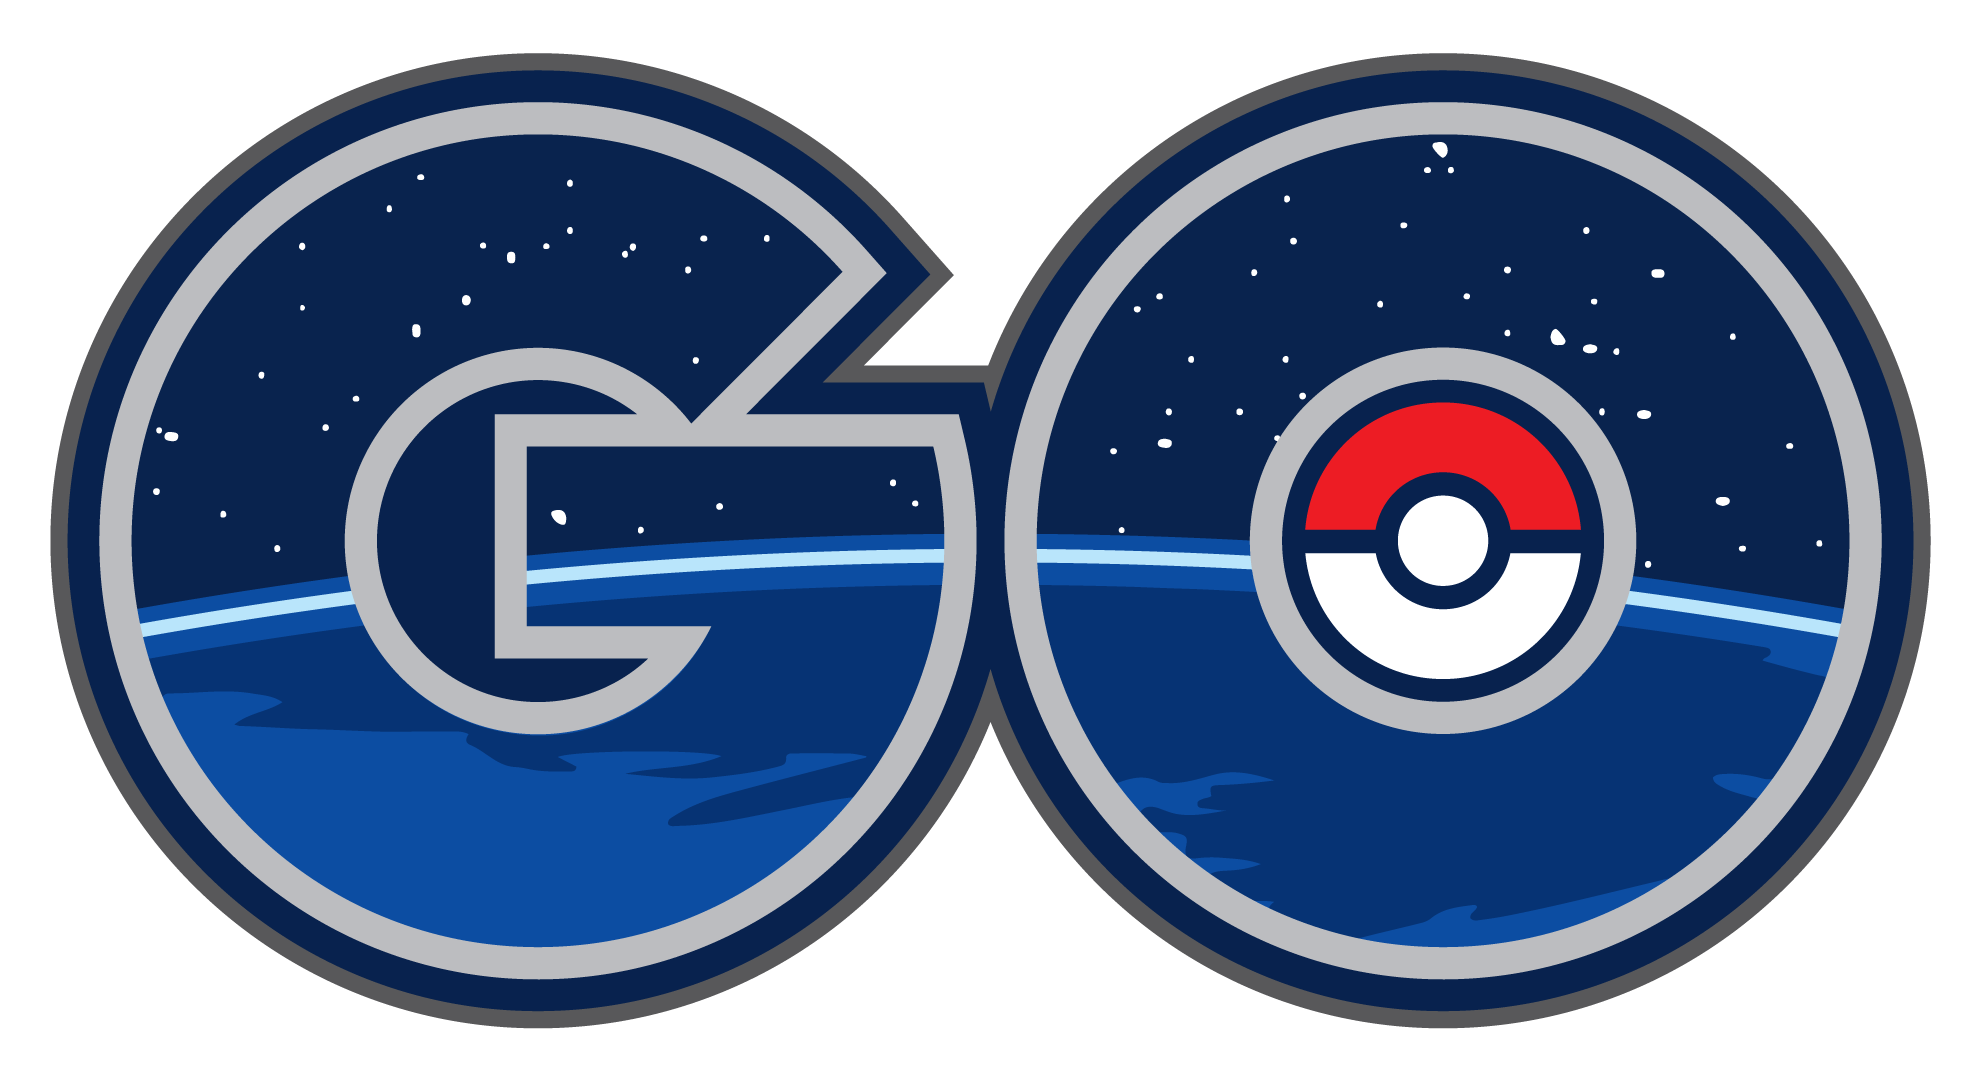 Pokémon Go is a new mobile g